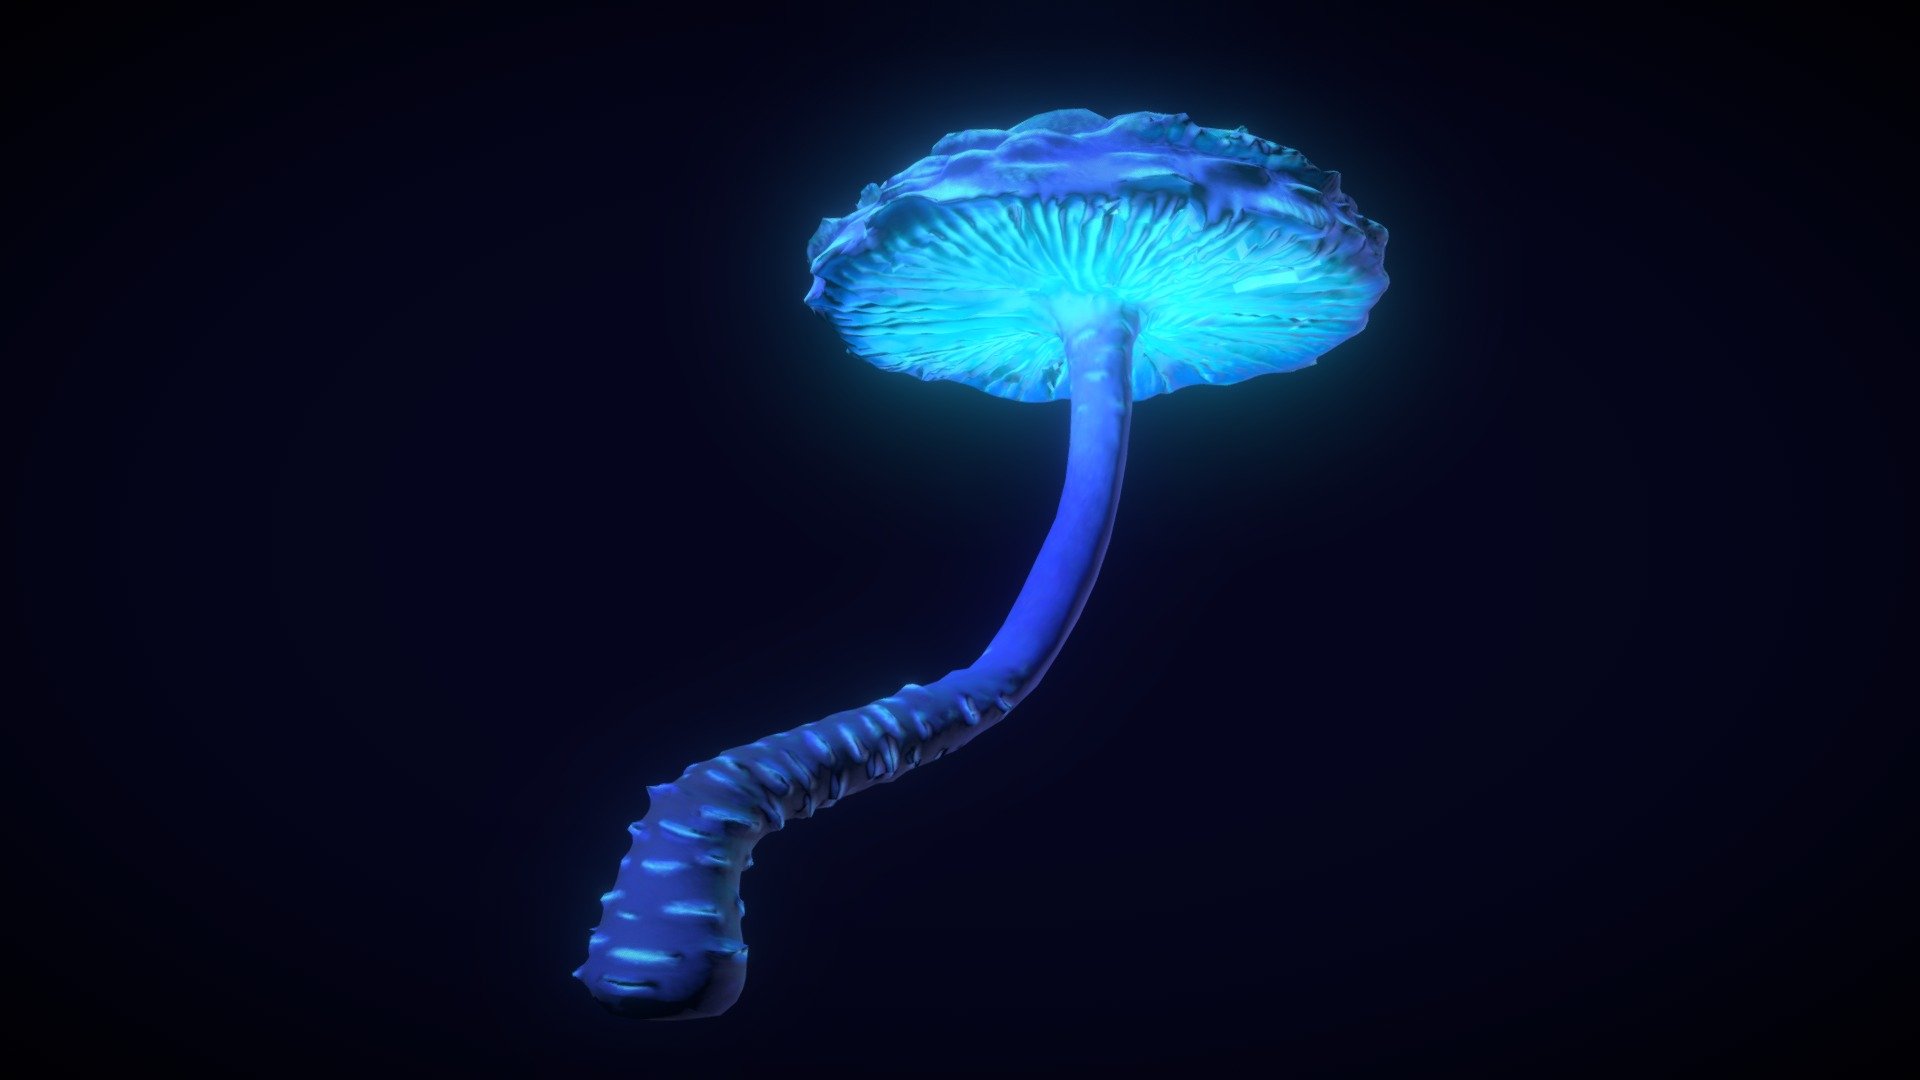 Fairy tale mushroom